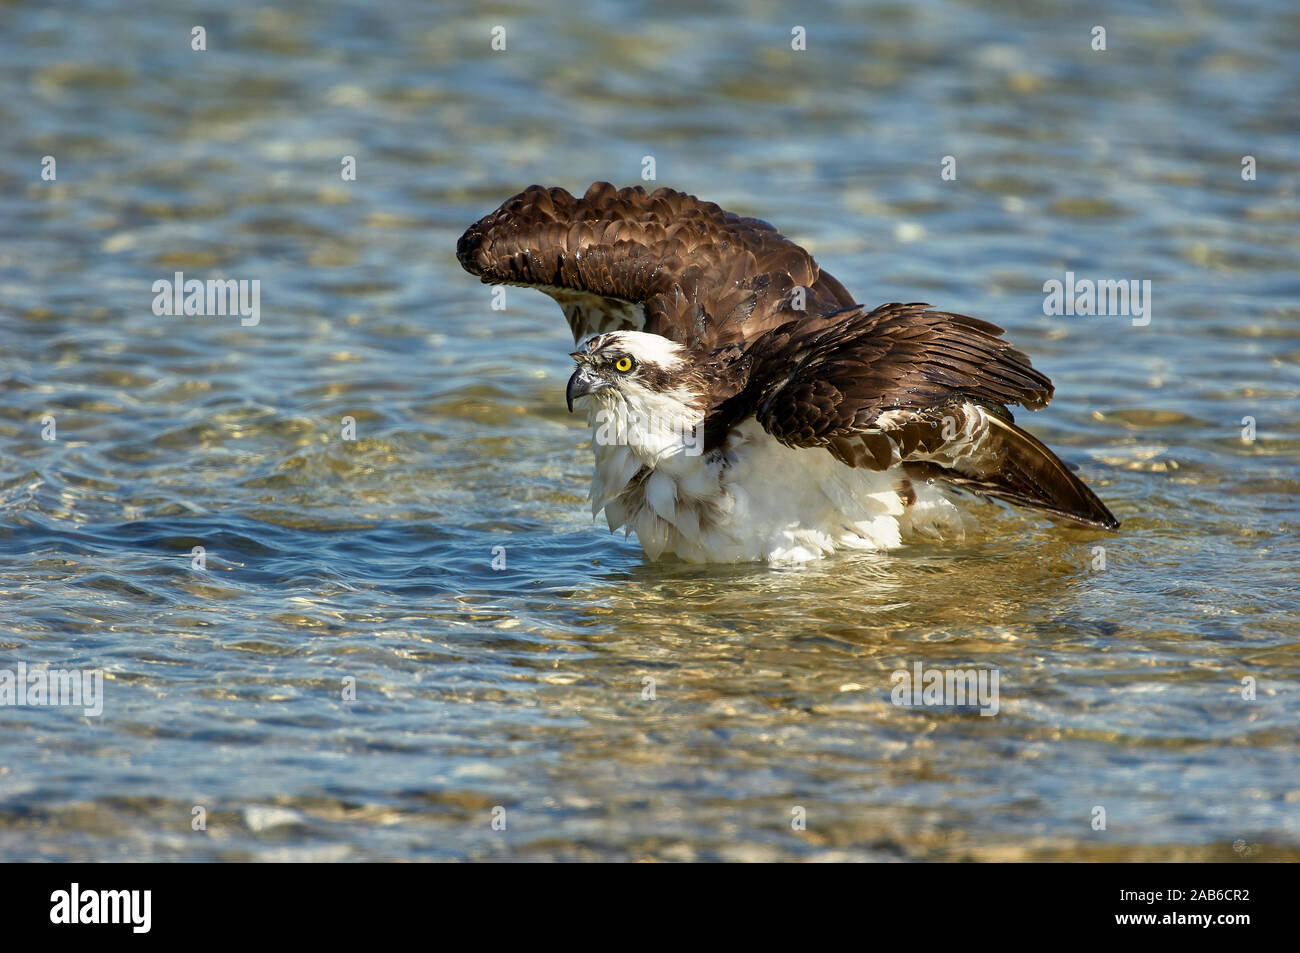 El águila pescadora (Pandion haliaetus), bañarse a lo largo del borde de la playa, tomados de Causeway entre Fort Myers y Sanibel Island, Florida, EE.UU. Foto de stock